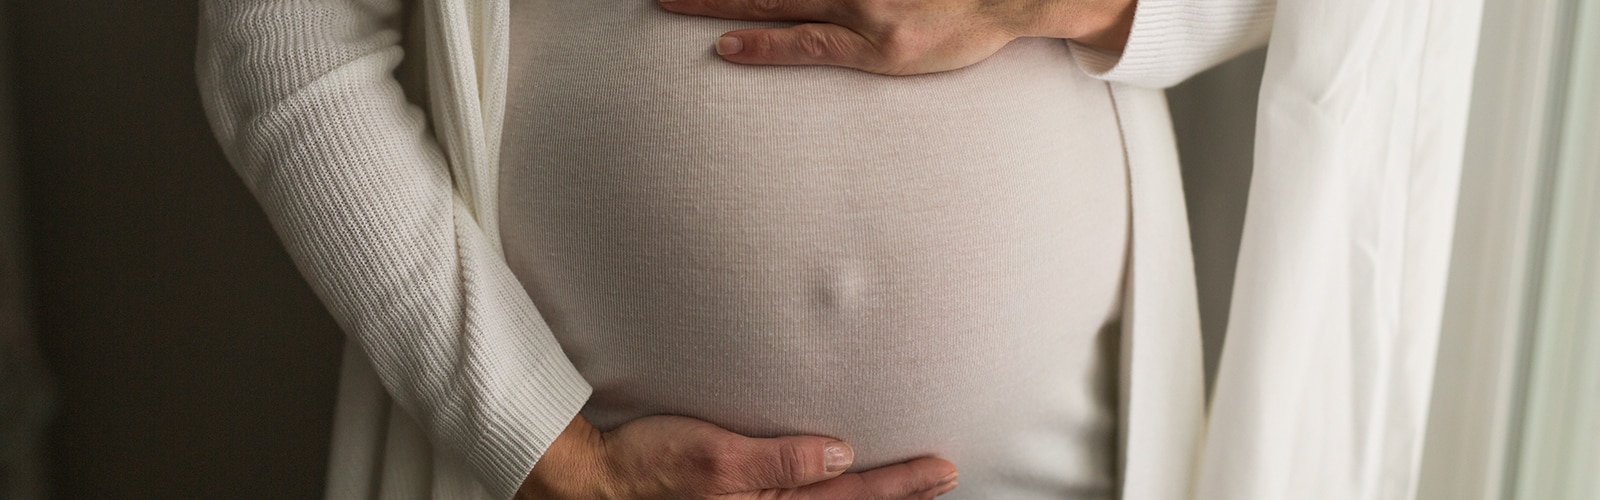 Inkontinens vid graviditet och i andra vardagssituationer | TENA